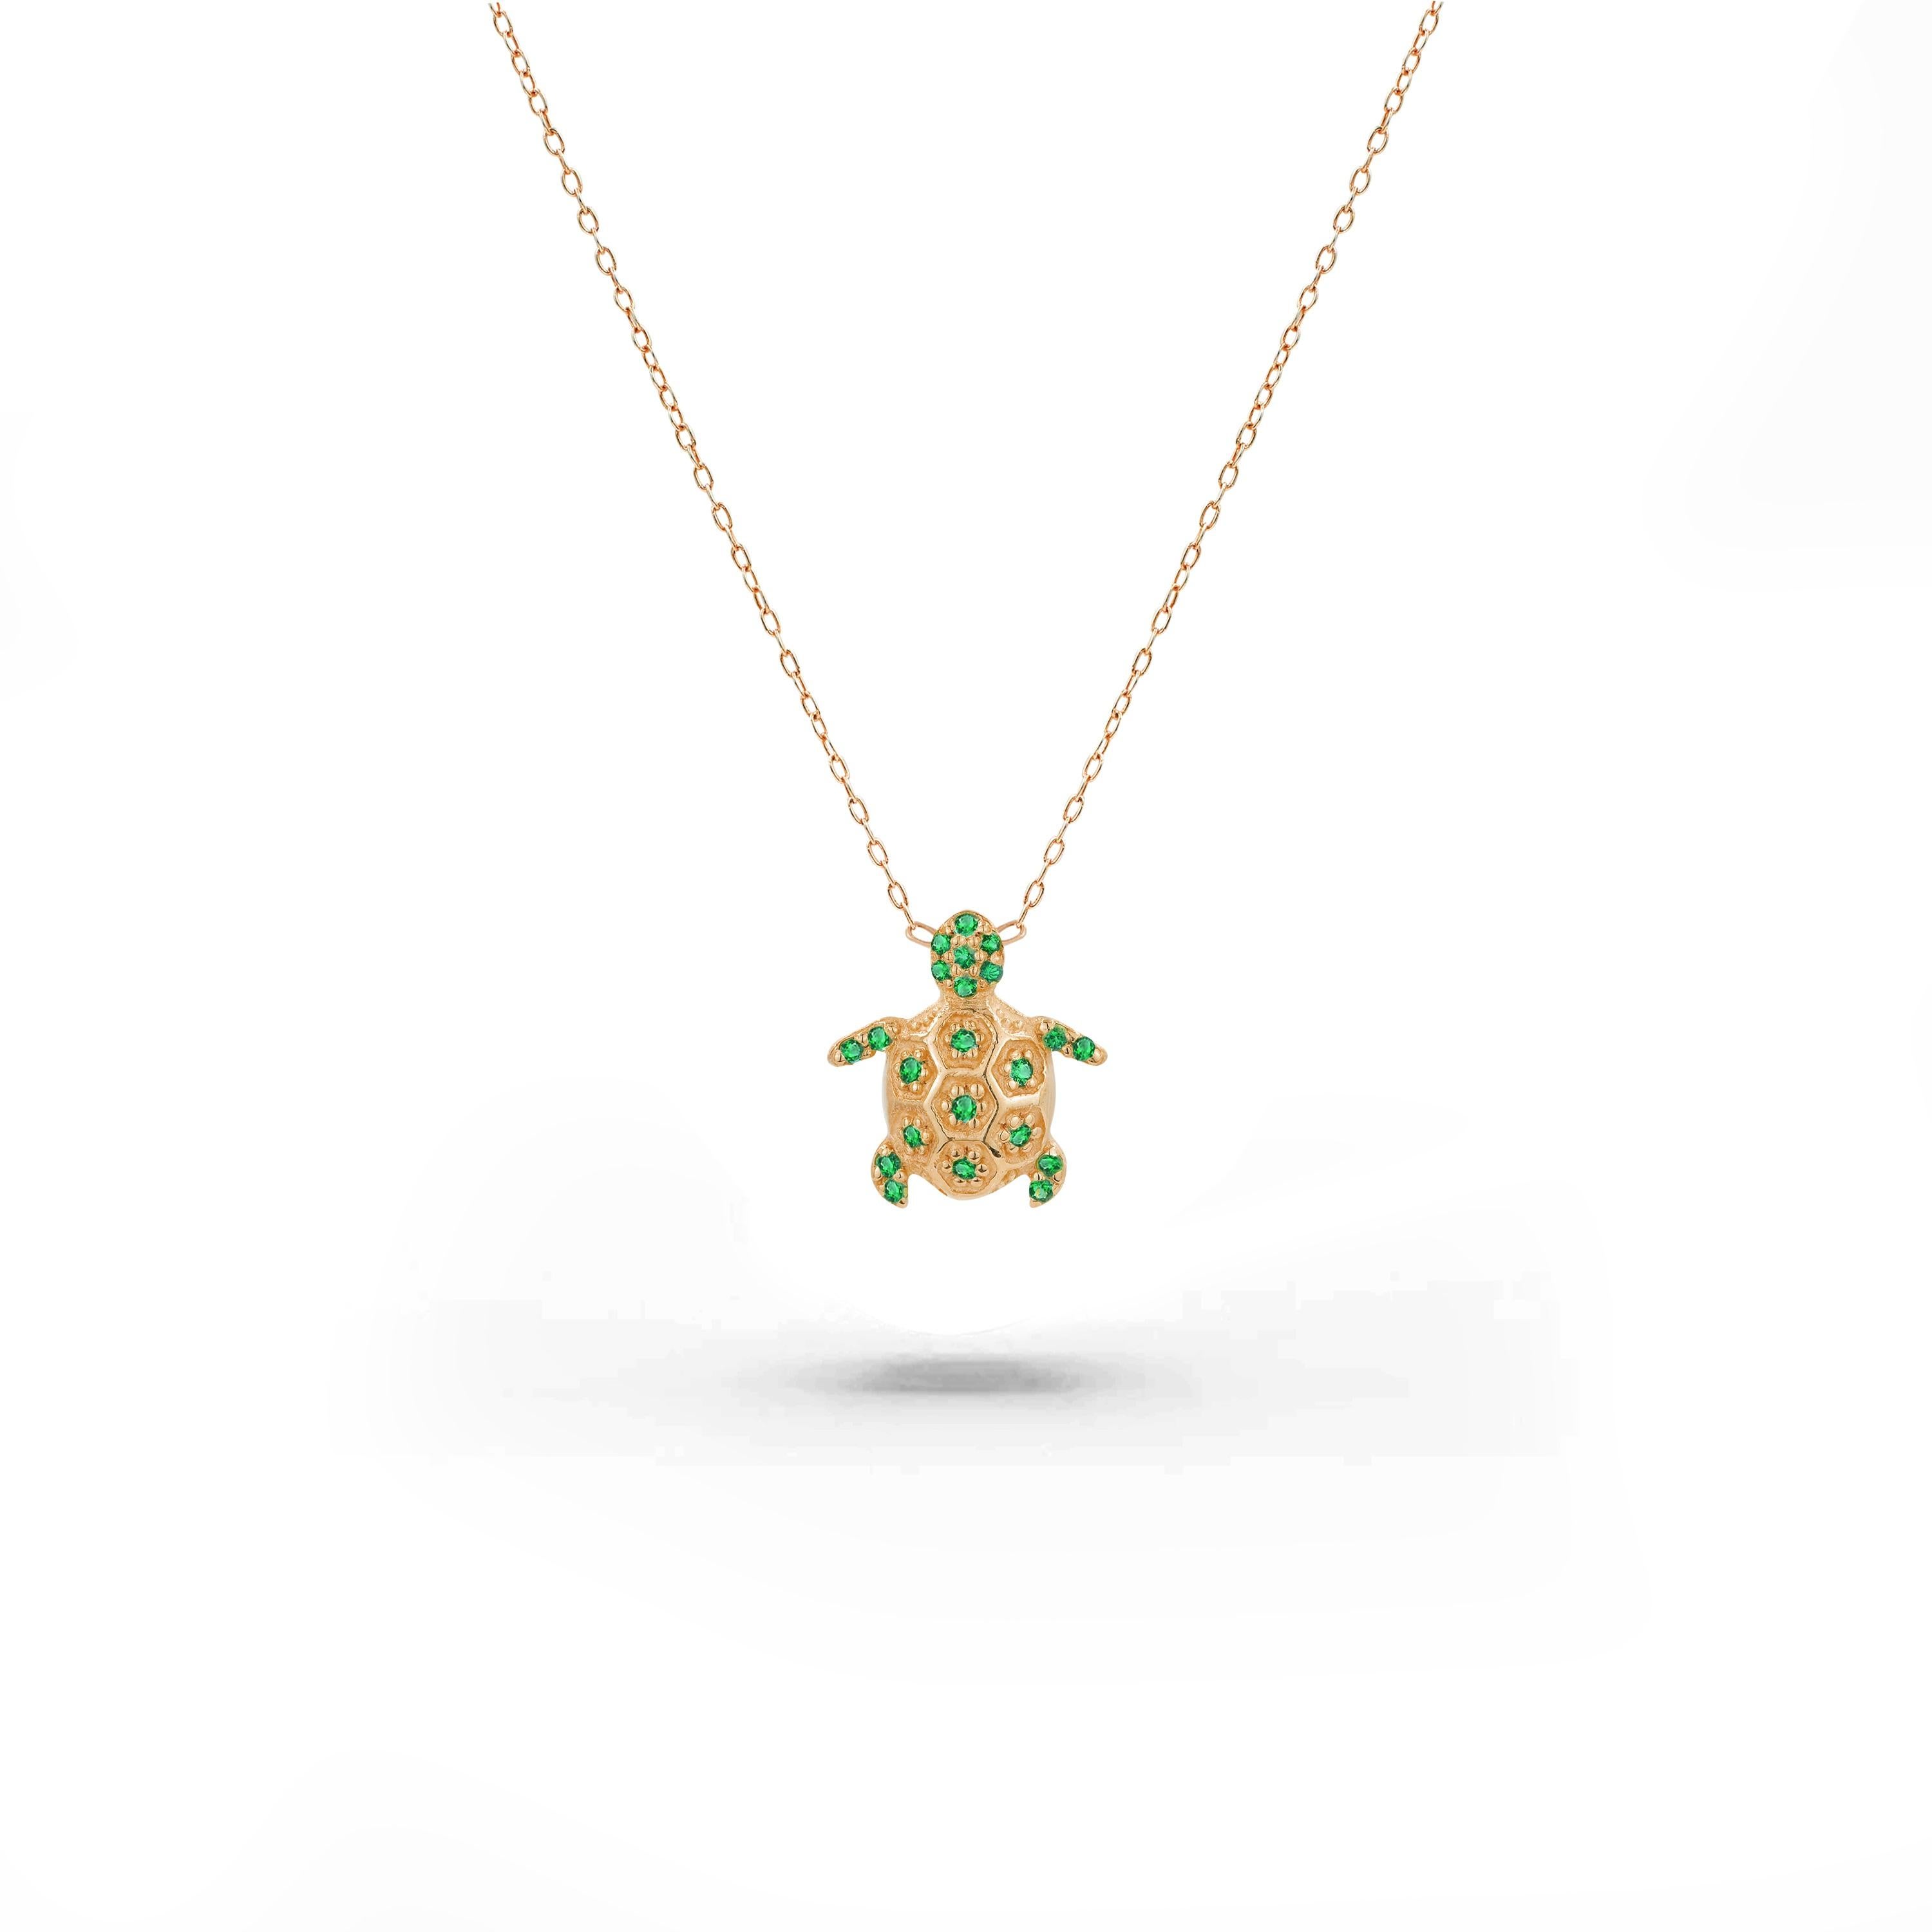 Le collier Emerald Turtle est en or massif 14k disponible en trois couleurs, or blanc / or rose / or jaune.

Ce magnifique petit collier minimaliste est orné d'une émeraude naturelle de qualité AAA. Parfait pour être porté seul pour un style minimal